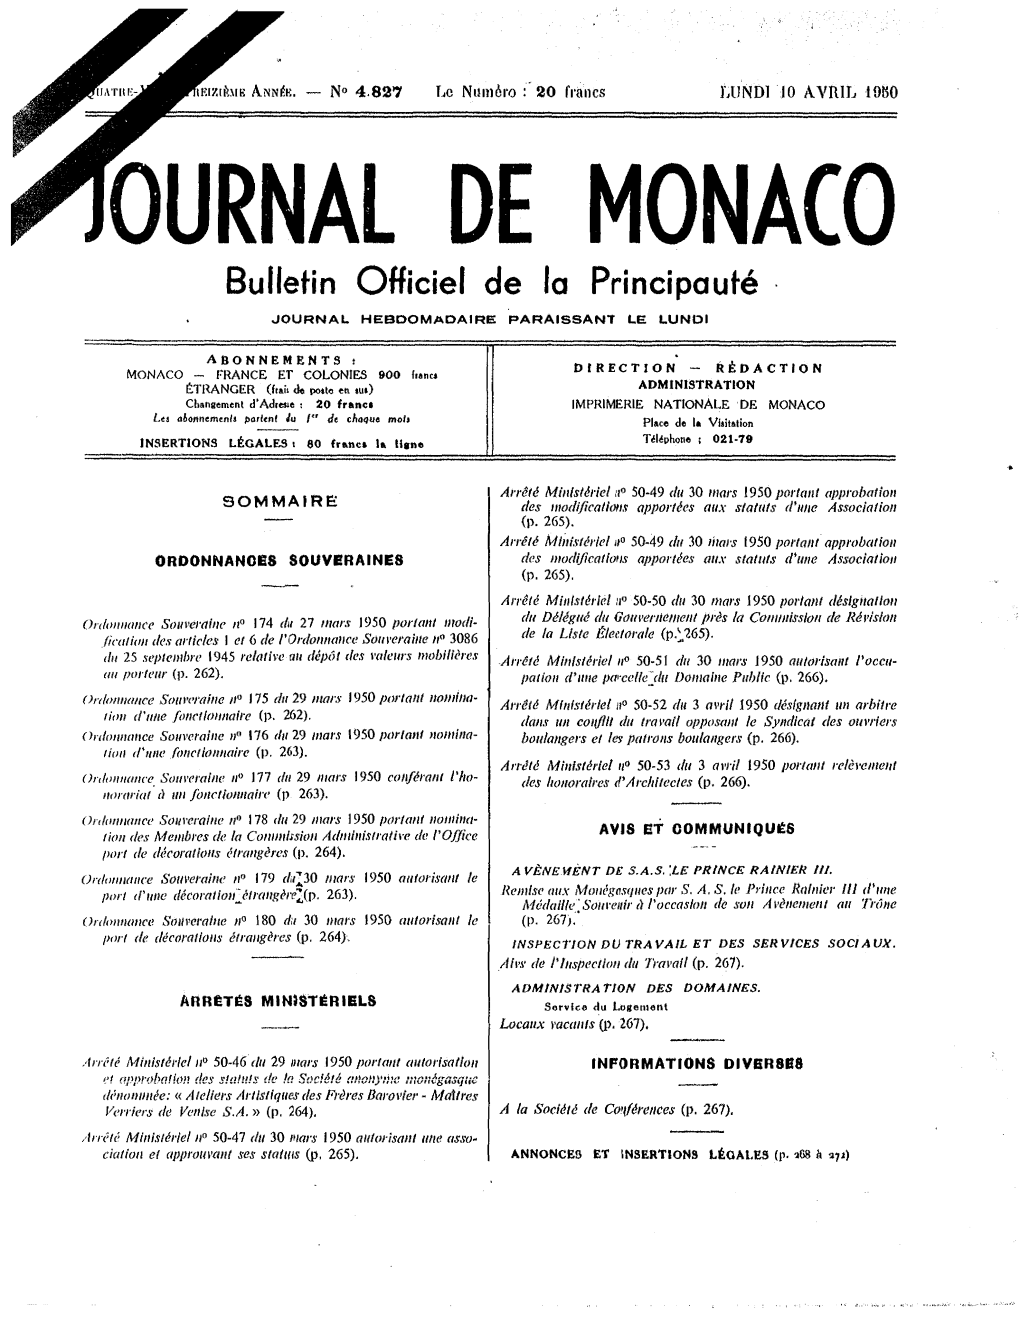 OURNAL DE MONACO Bulletin Officiel De La Principauté JOURNAL HEBDOMADAIRE PARAISSANT LE LUNDI